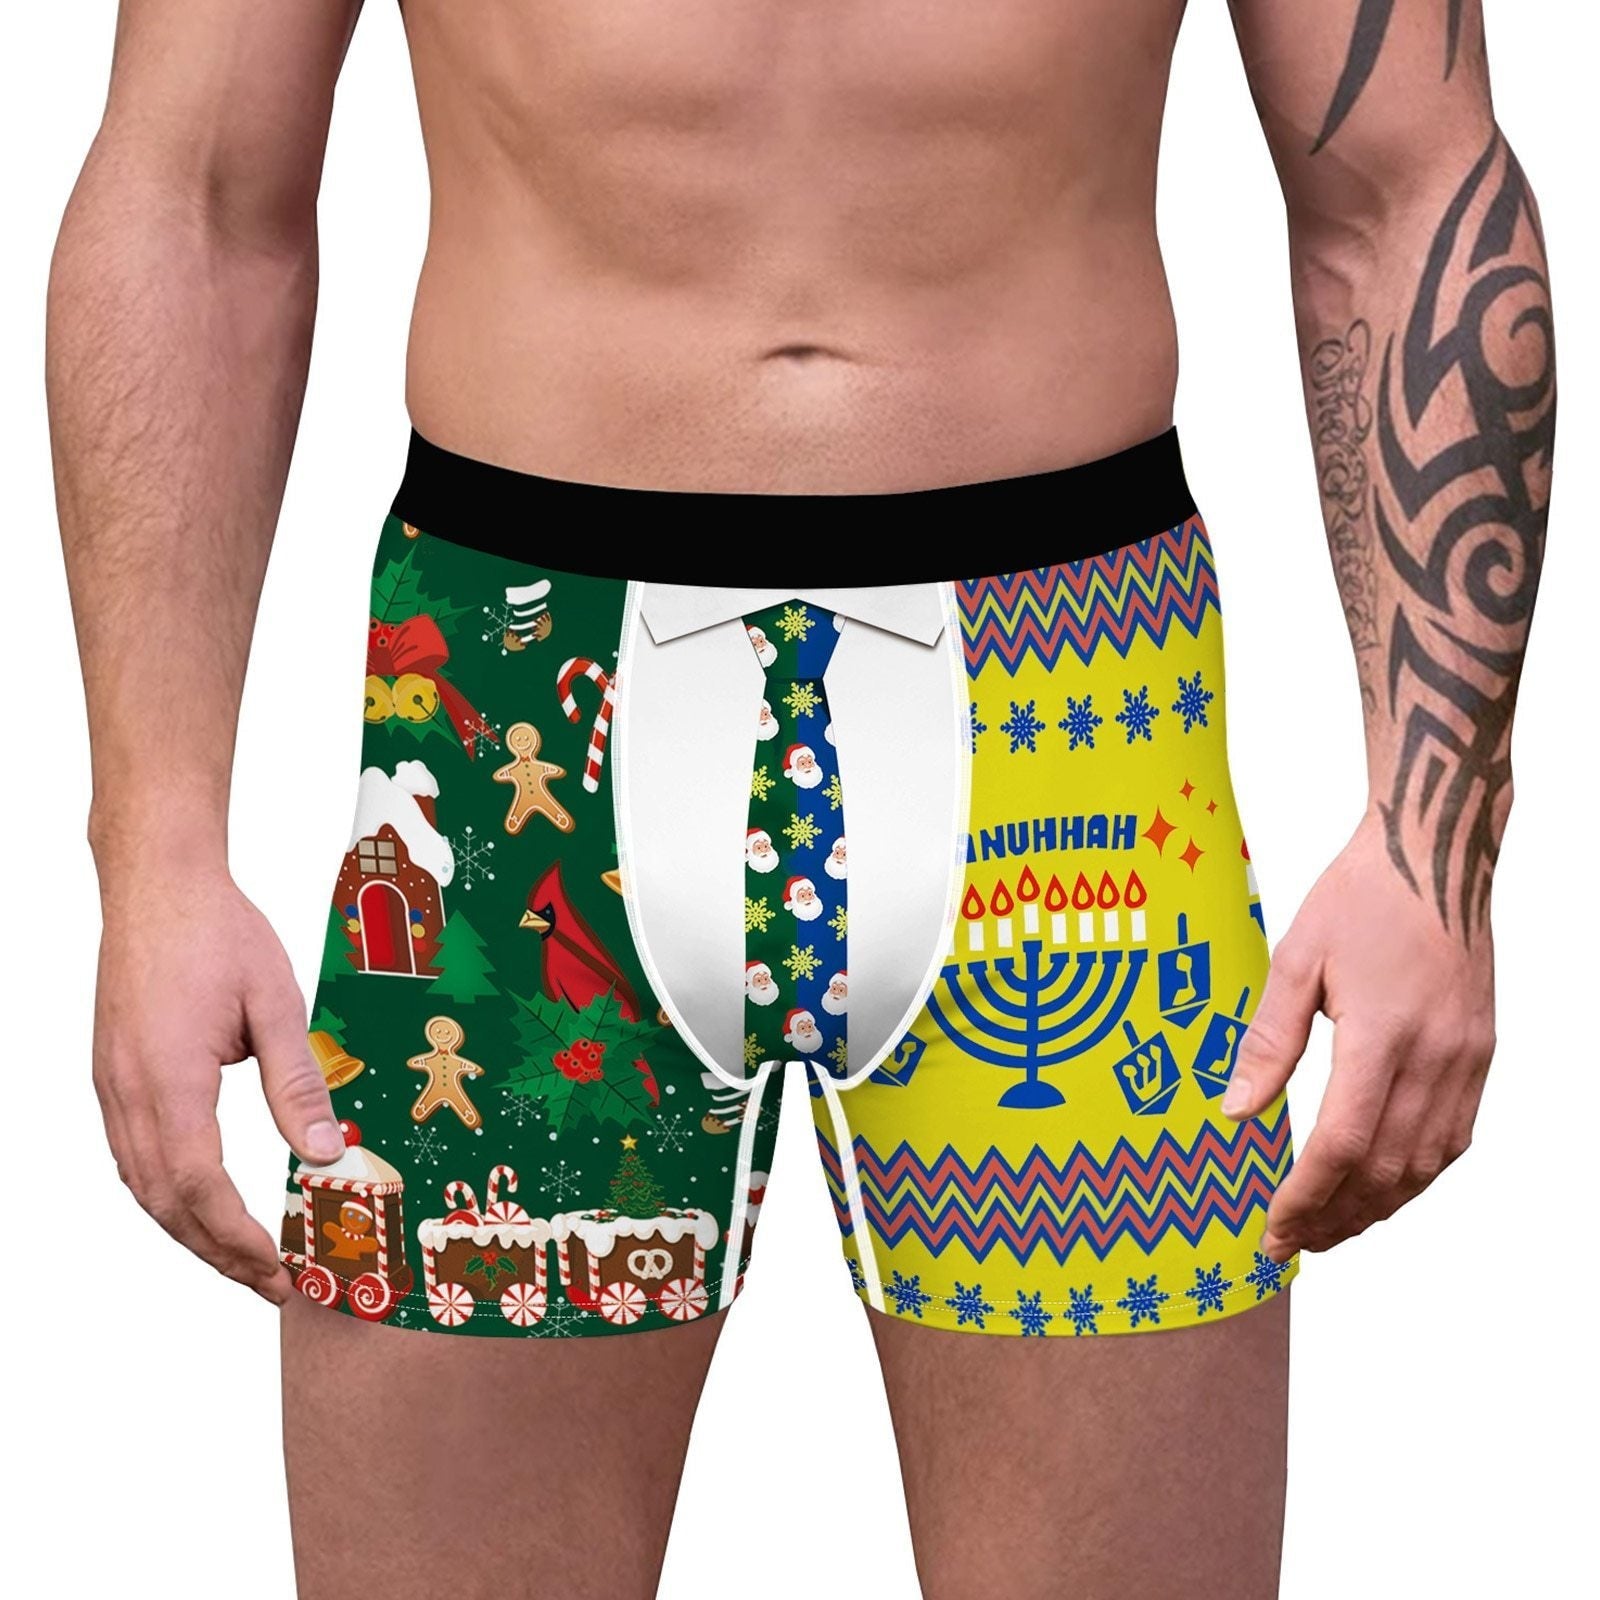 SALE - XMAS GIFT - Mens Christmas Boxer Shorts Printed Holiday Season